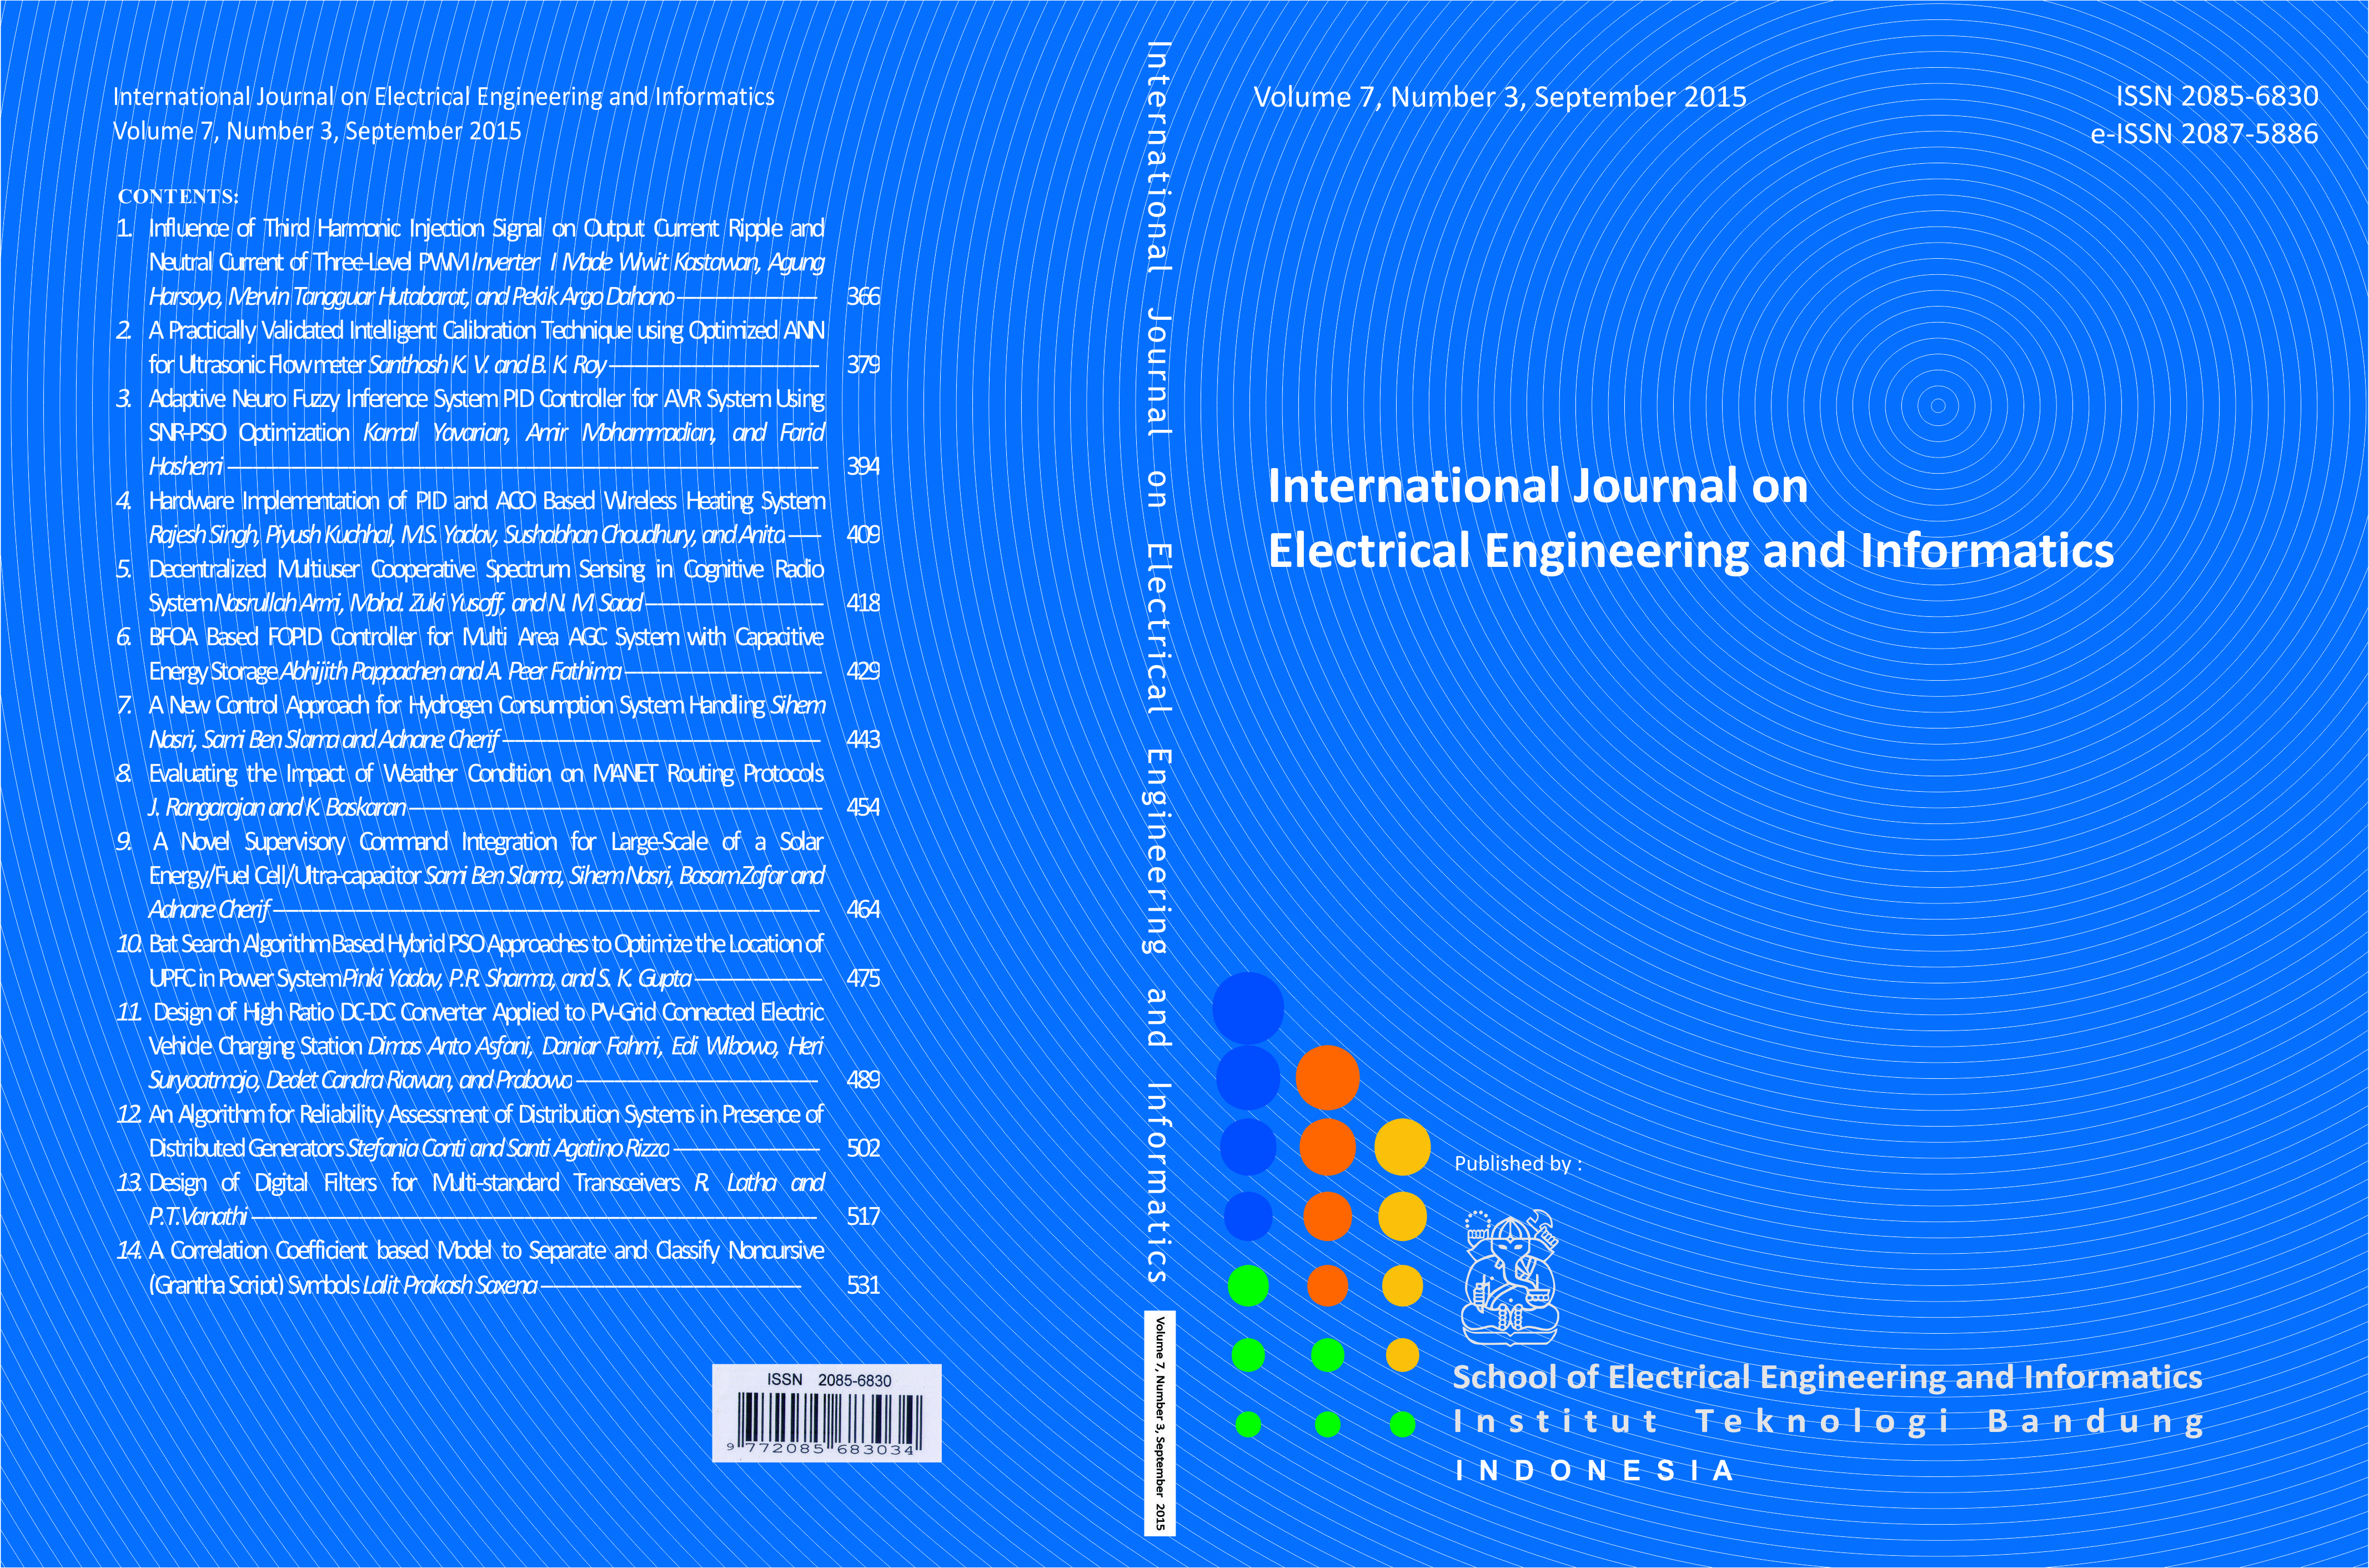 Journal cover Vol. 7 No. 3 September 2015